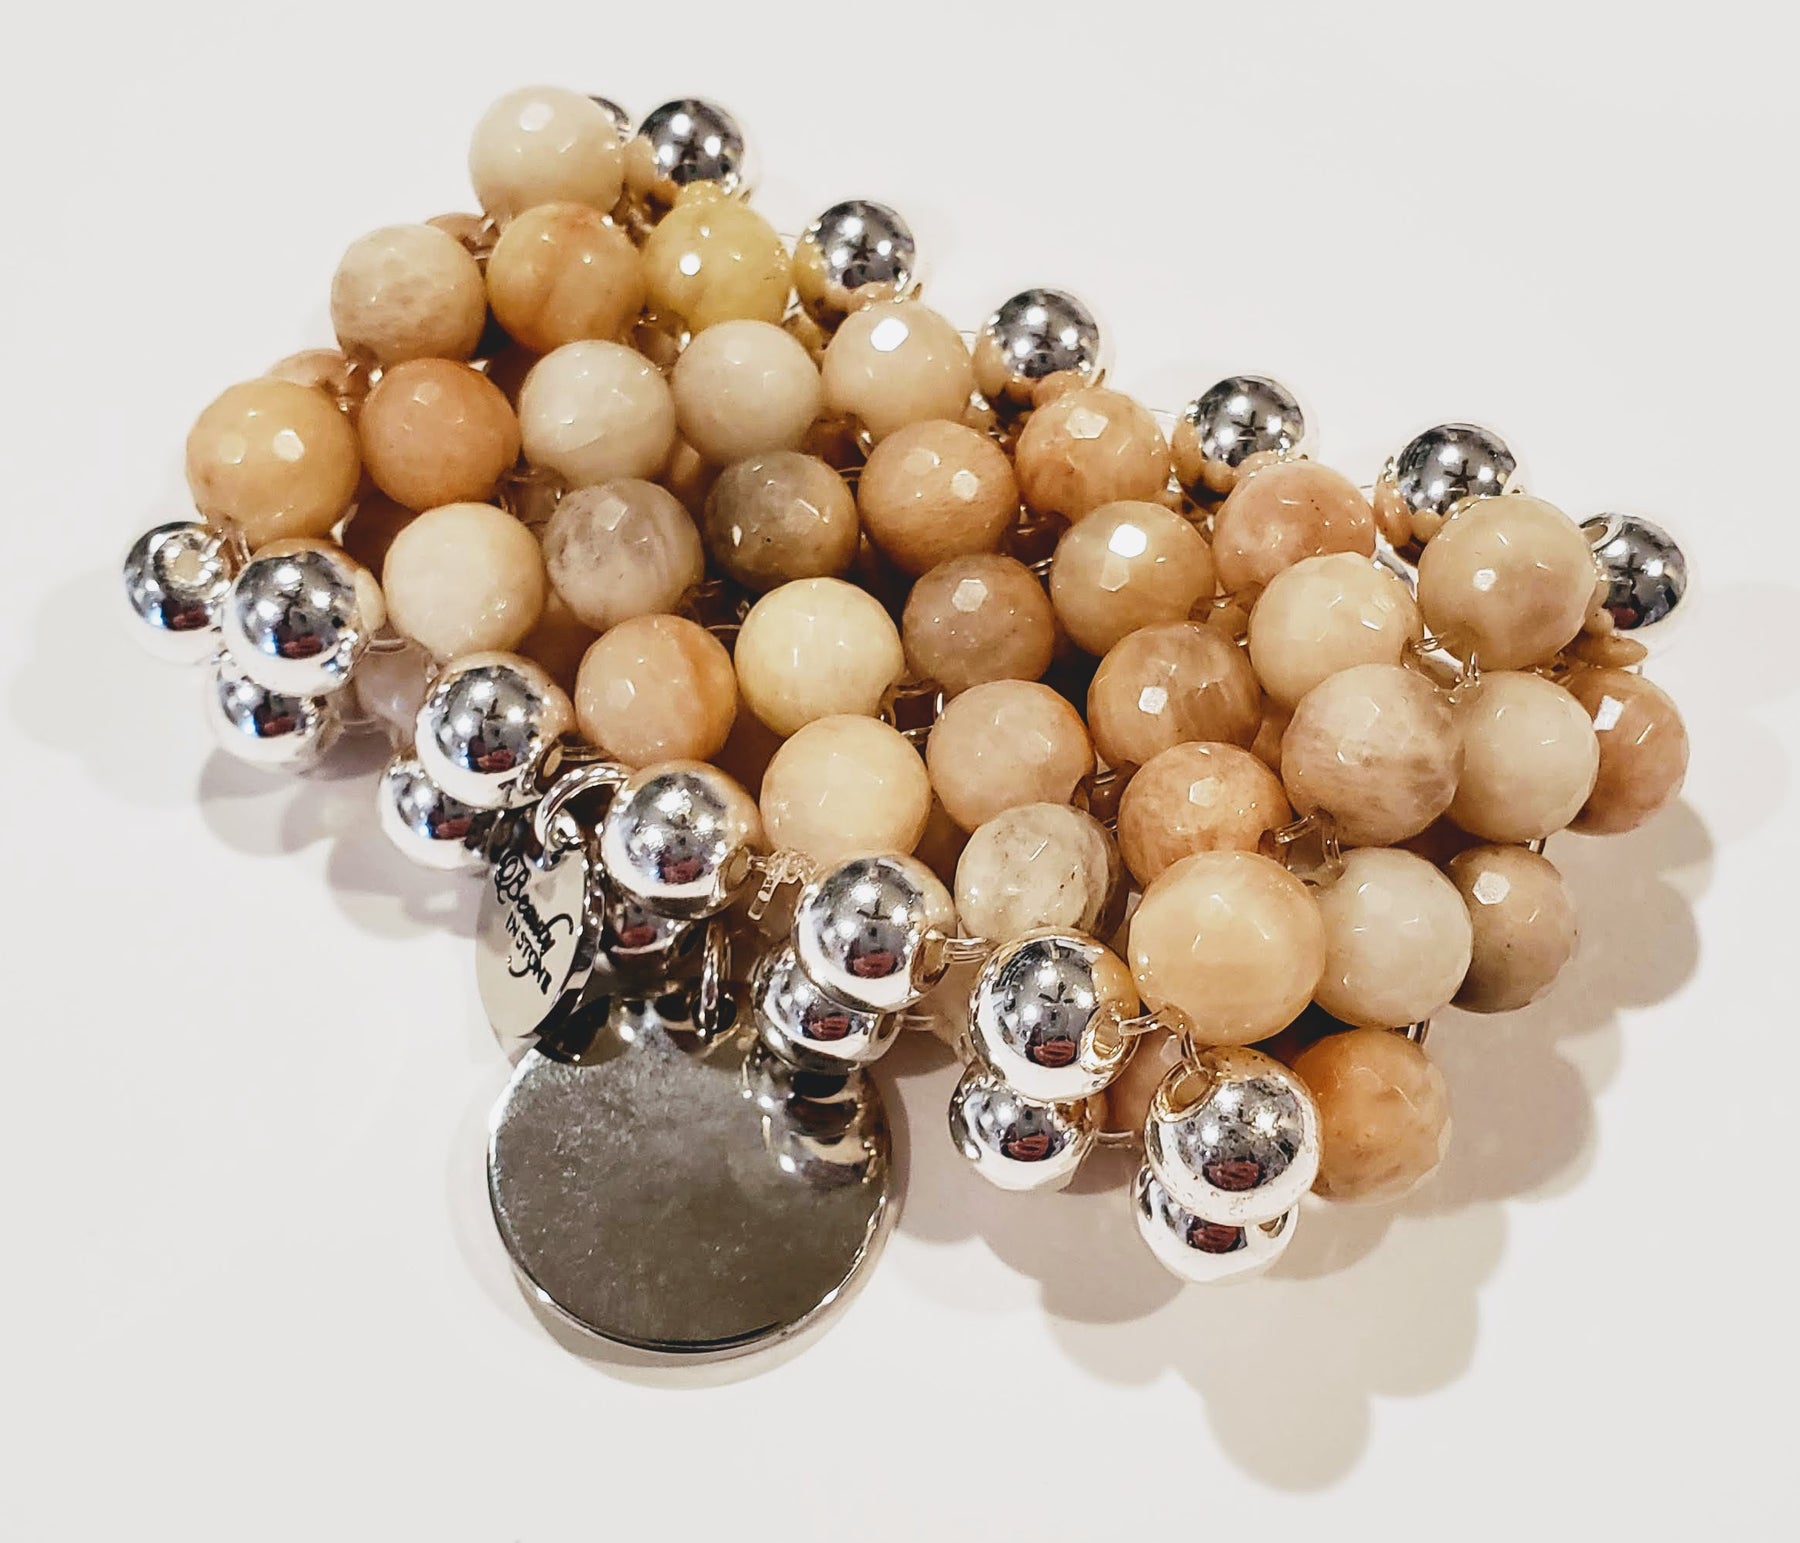 Buy Leather Gemstone Cuff Bracelets Online - Beauty In Stone Jewelry